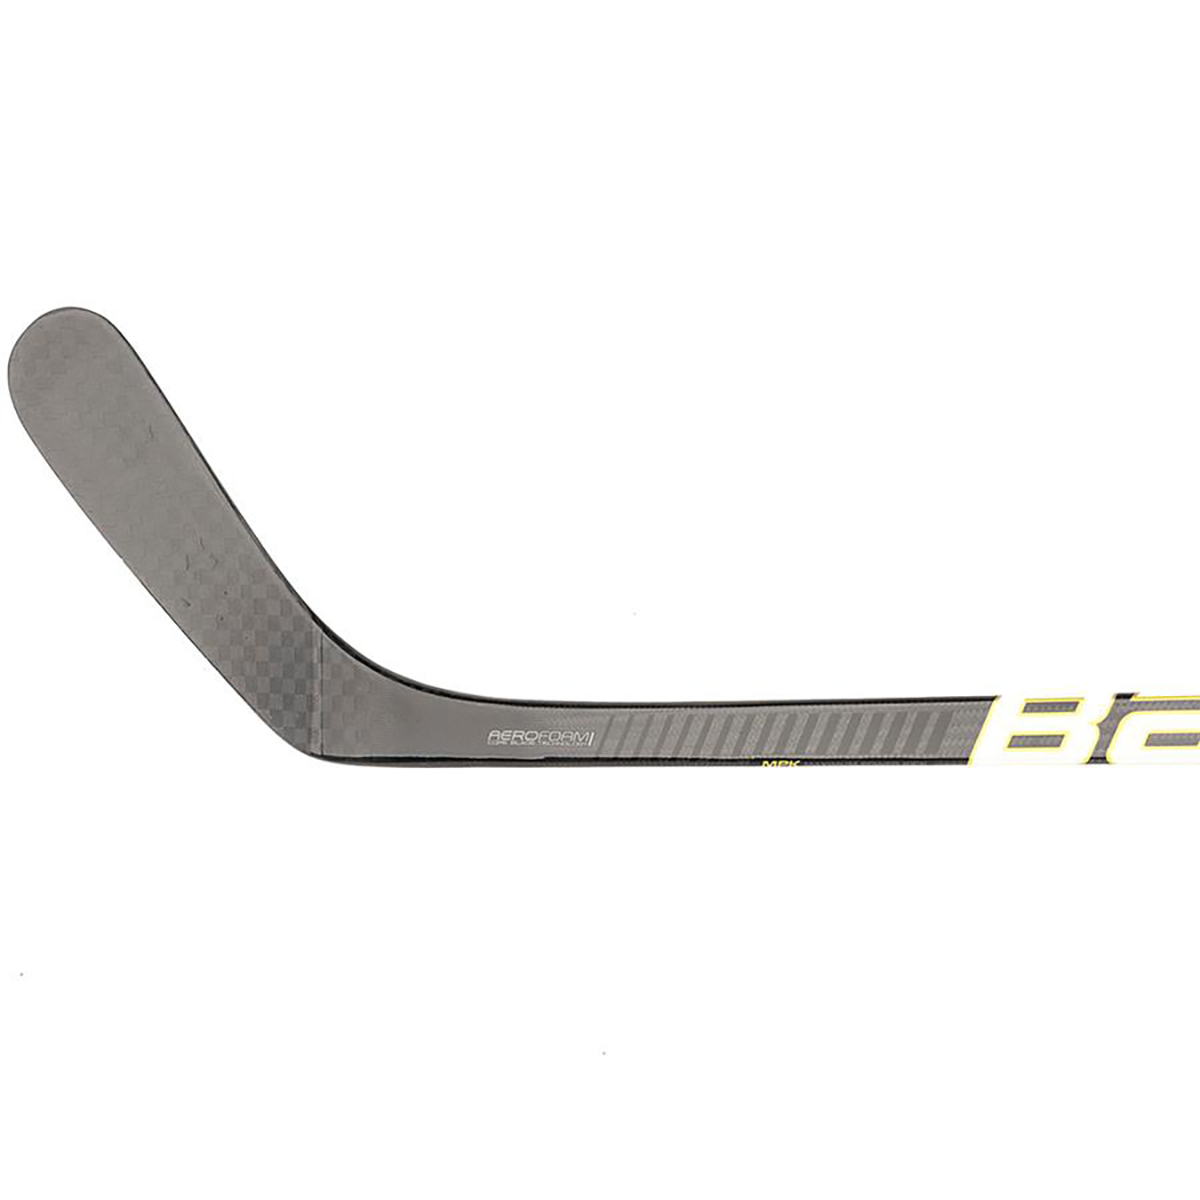 Details about   2 Pack BAUER Supreme 2S Team Season 2019 Ice Hockey Sticks Senior Flex 